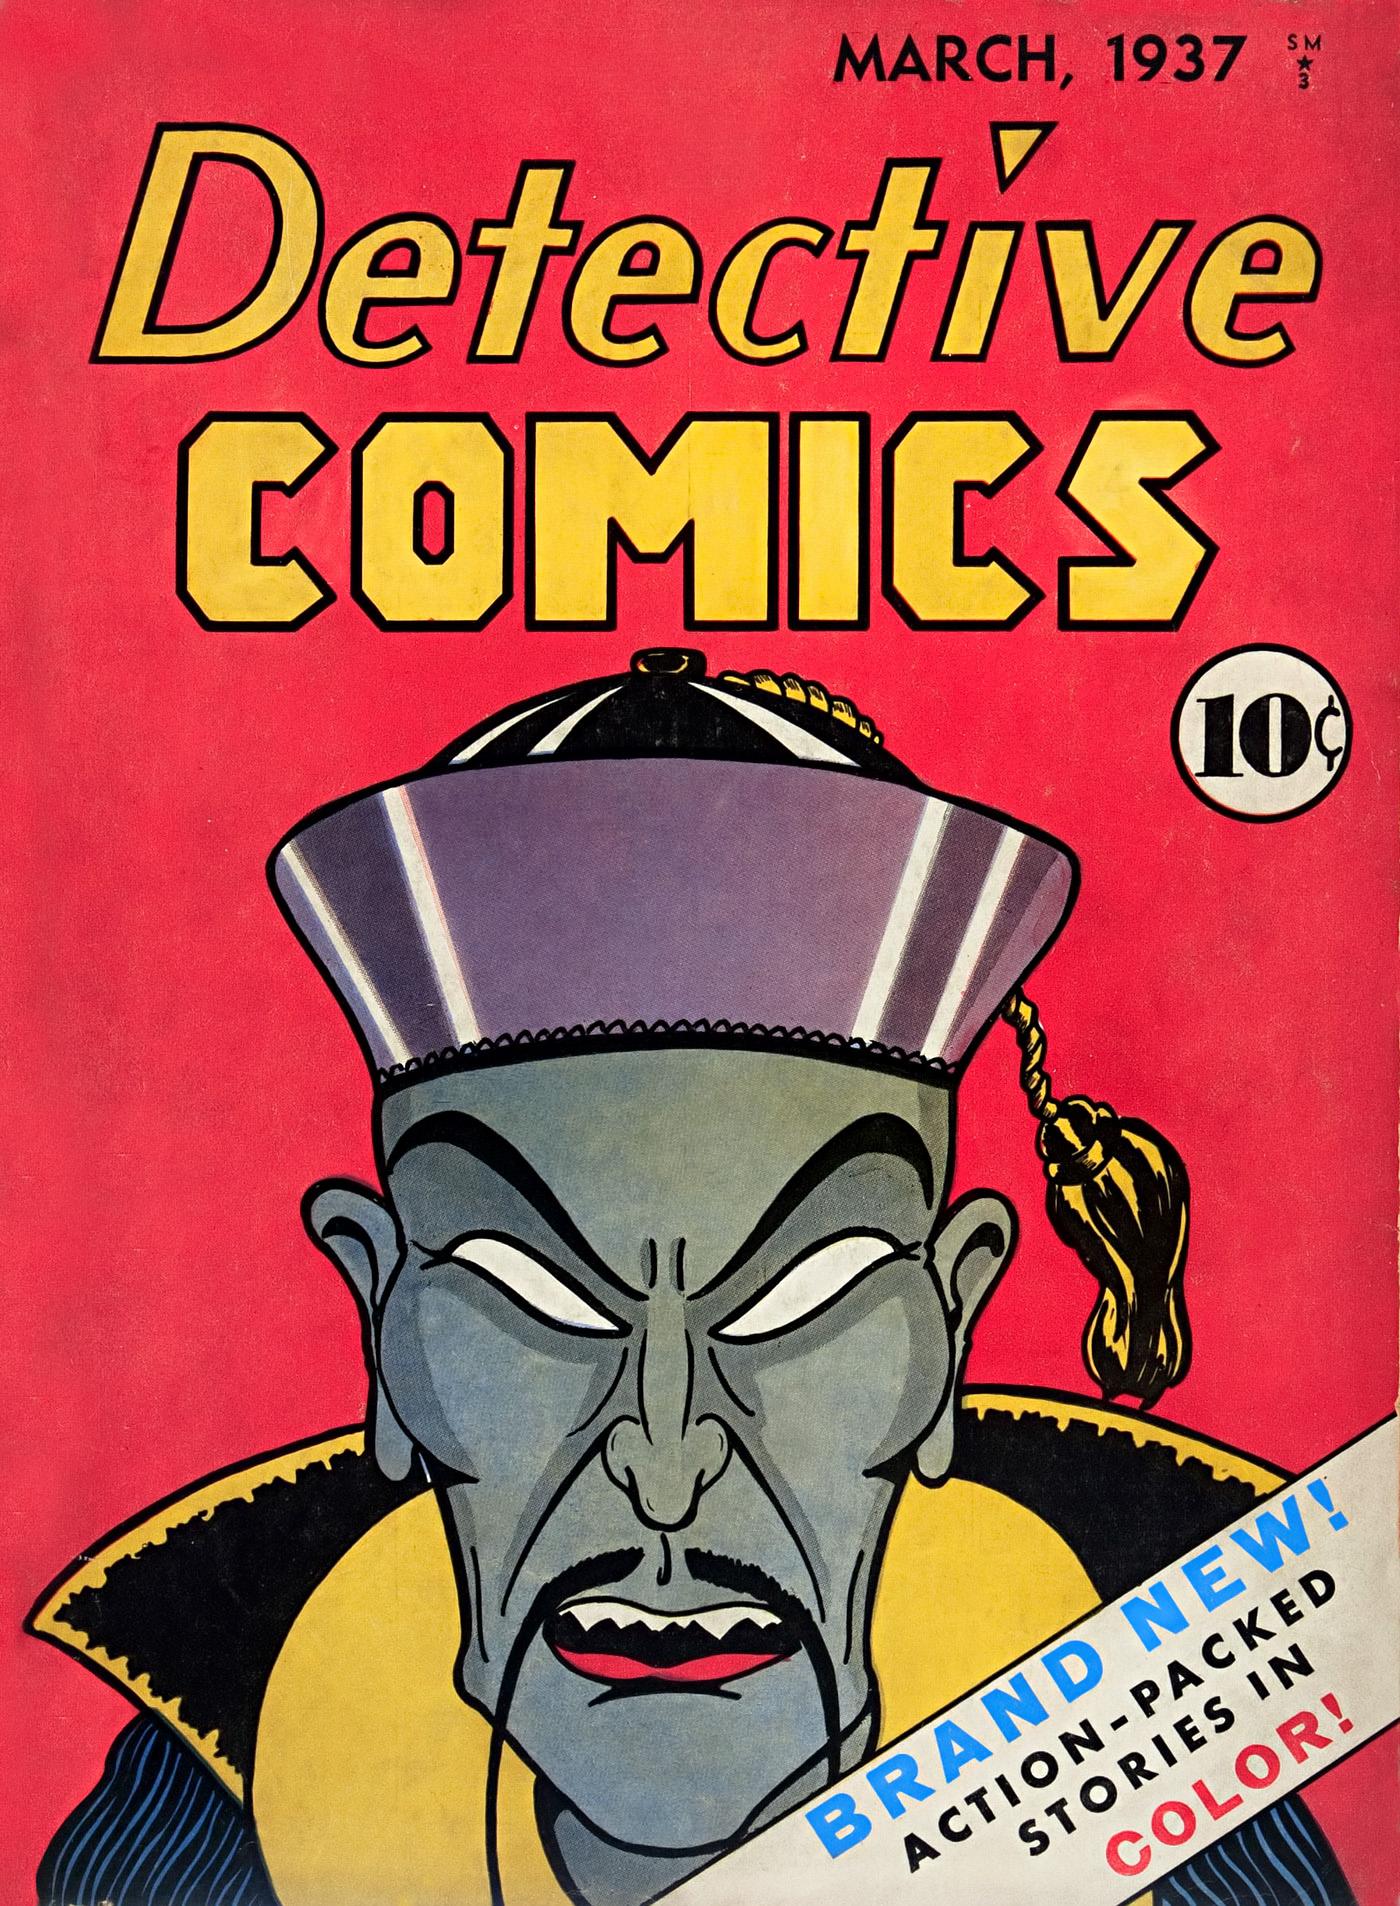 Detective Comics Vol. 1 #1